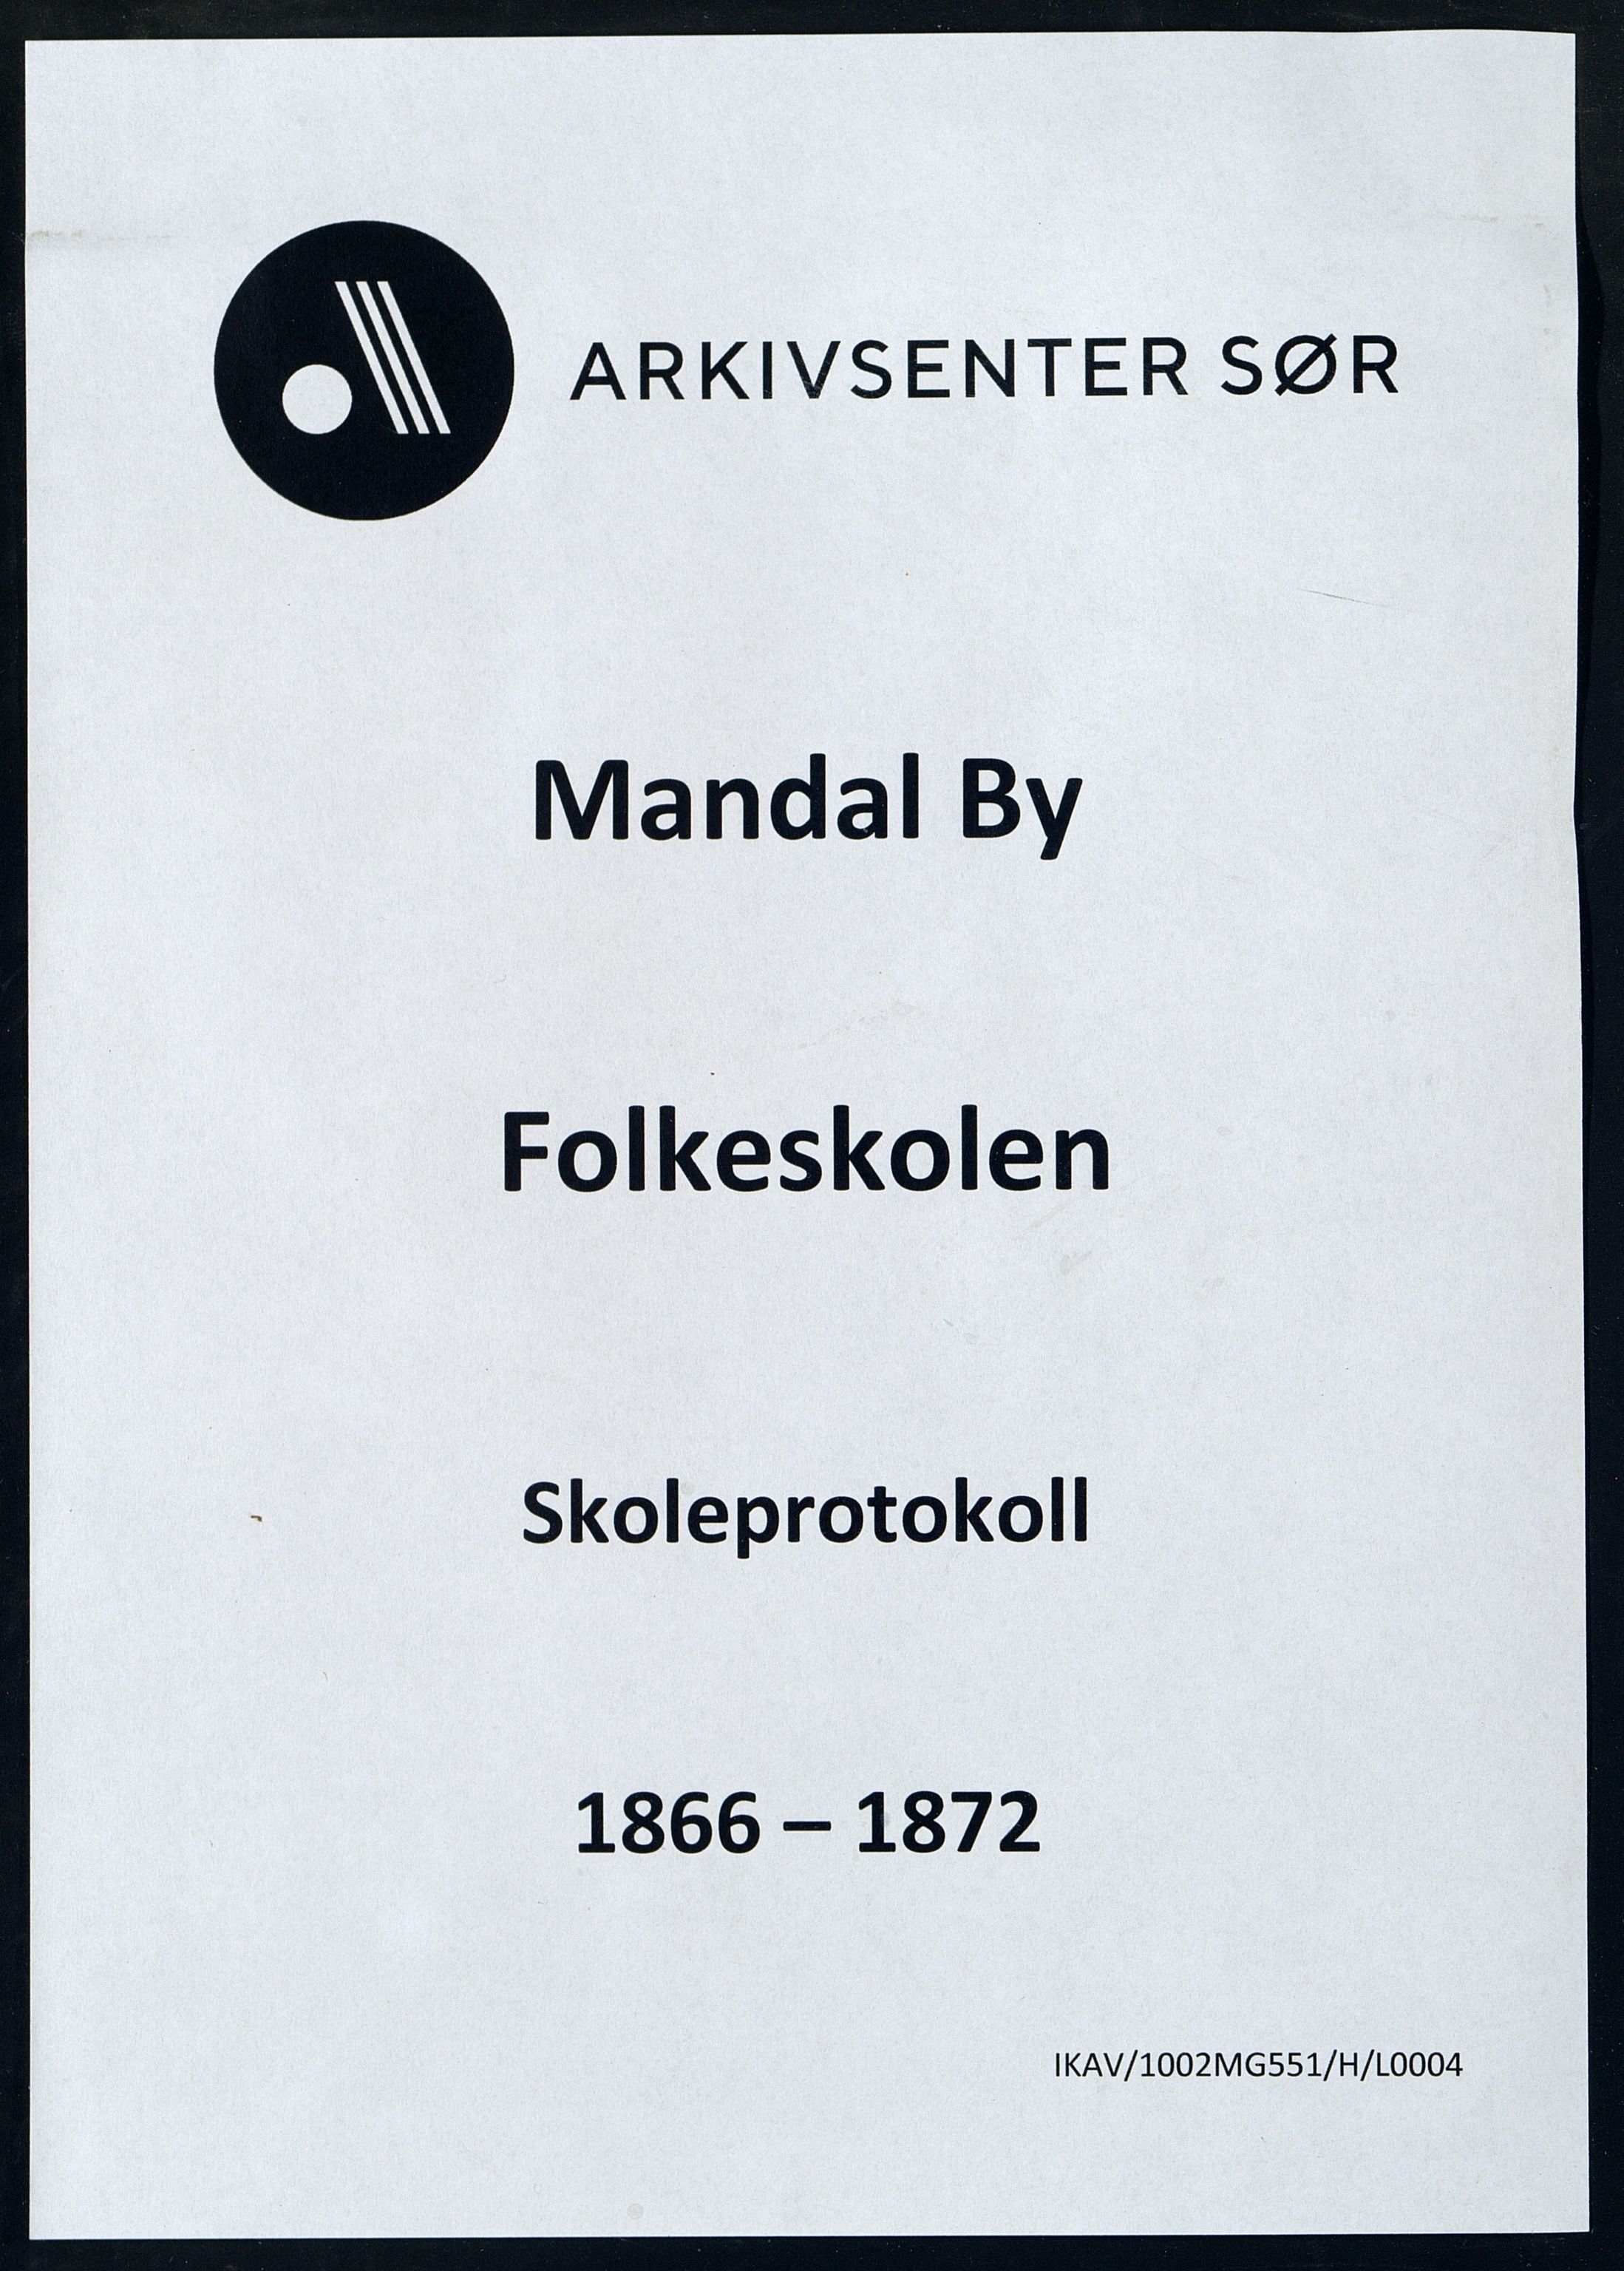 Mandal By - Mandal Allmueskole/Folkeskole/Skole, IKAV/1002MG551/H/L0004: Skoleprotokoll, 1866-1872